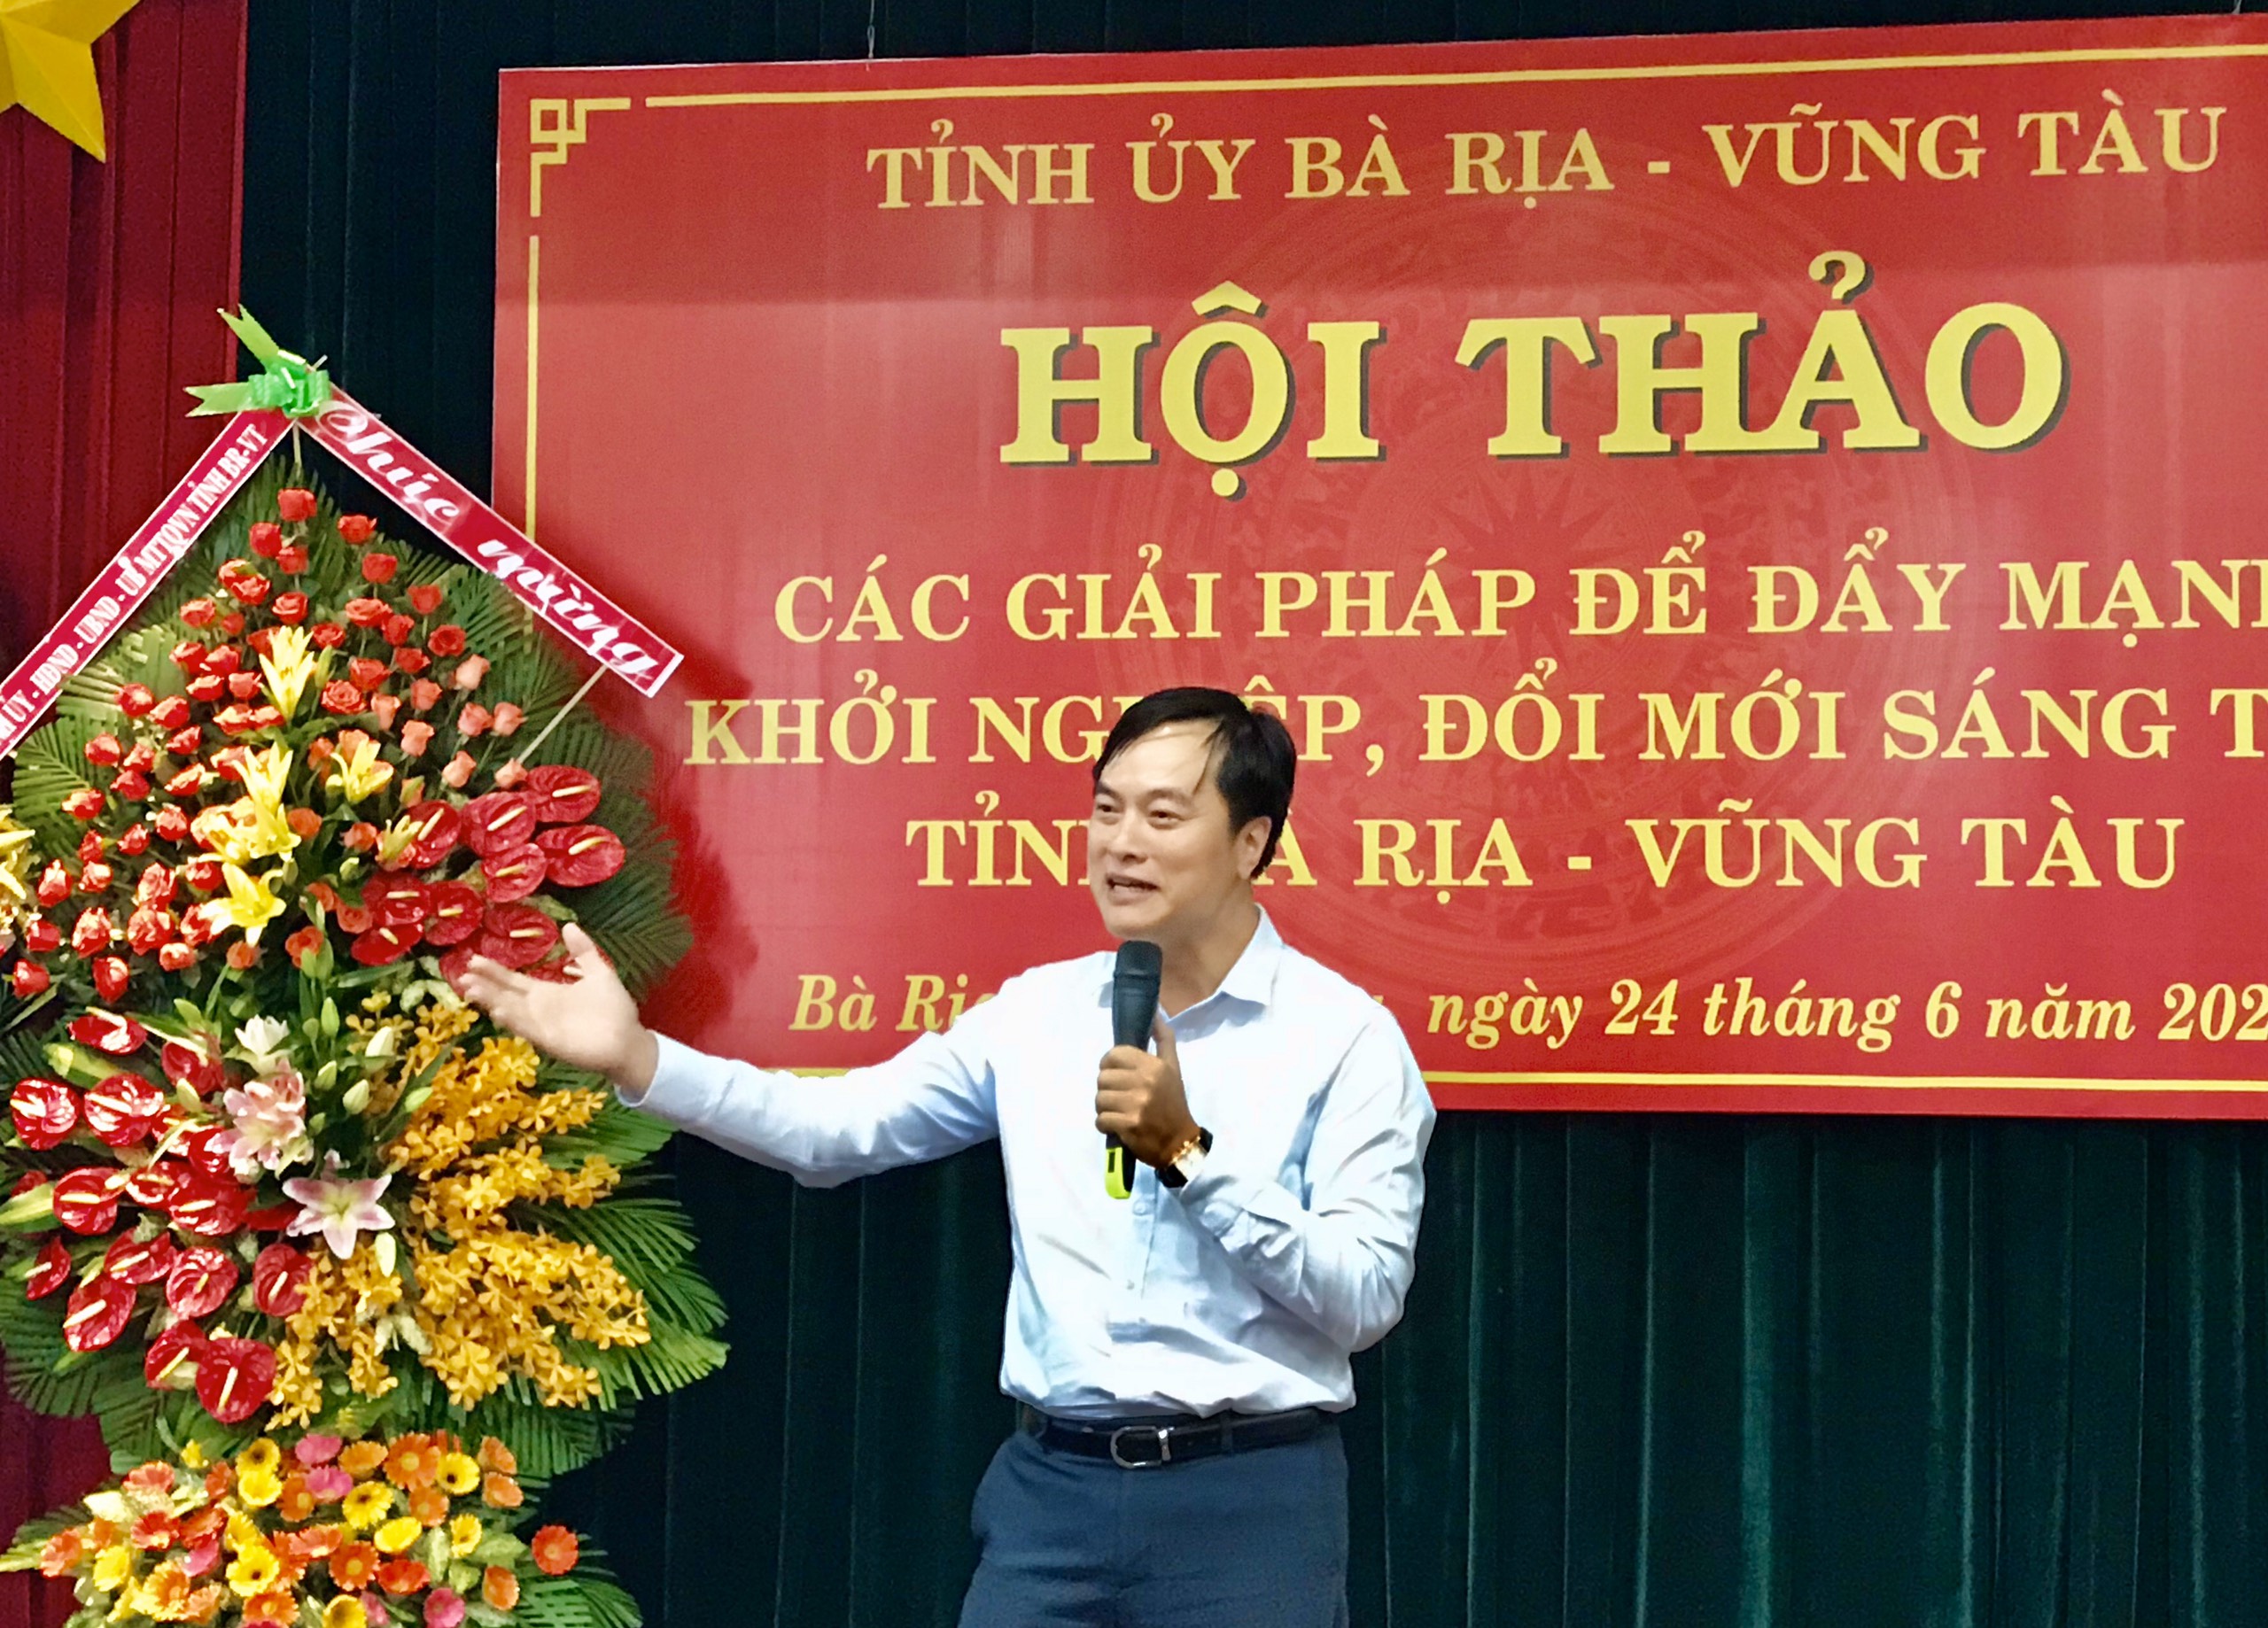 Ông Phạm Duy Hiếu, Phó Chủ tịch Quỹ khởi nghiệp doanh nghiệp KH-CN Việt Nam trình bày tham luận “Tư duy dẫn dắt trong công tác xây dựng hệ sinh thái đổi mới sáng tạo và khởi nghiệp địa phương hướng tới phát triển bền vững” tại Hội thảo.